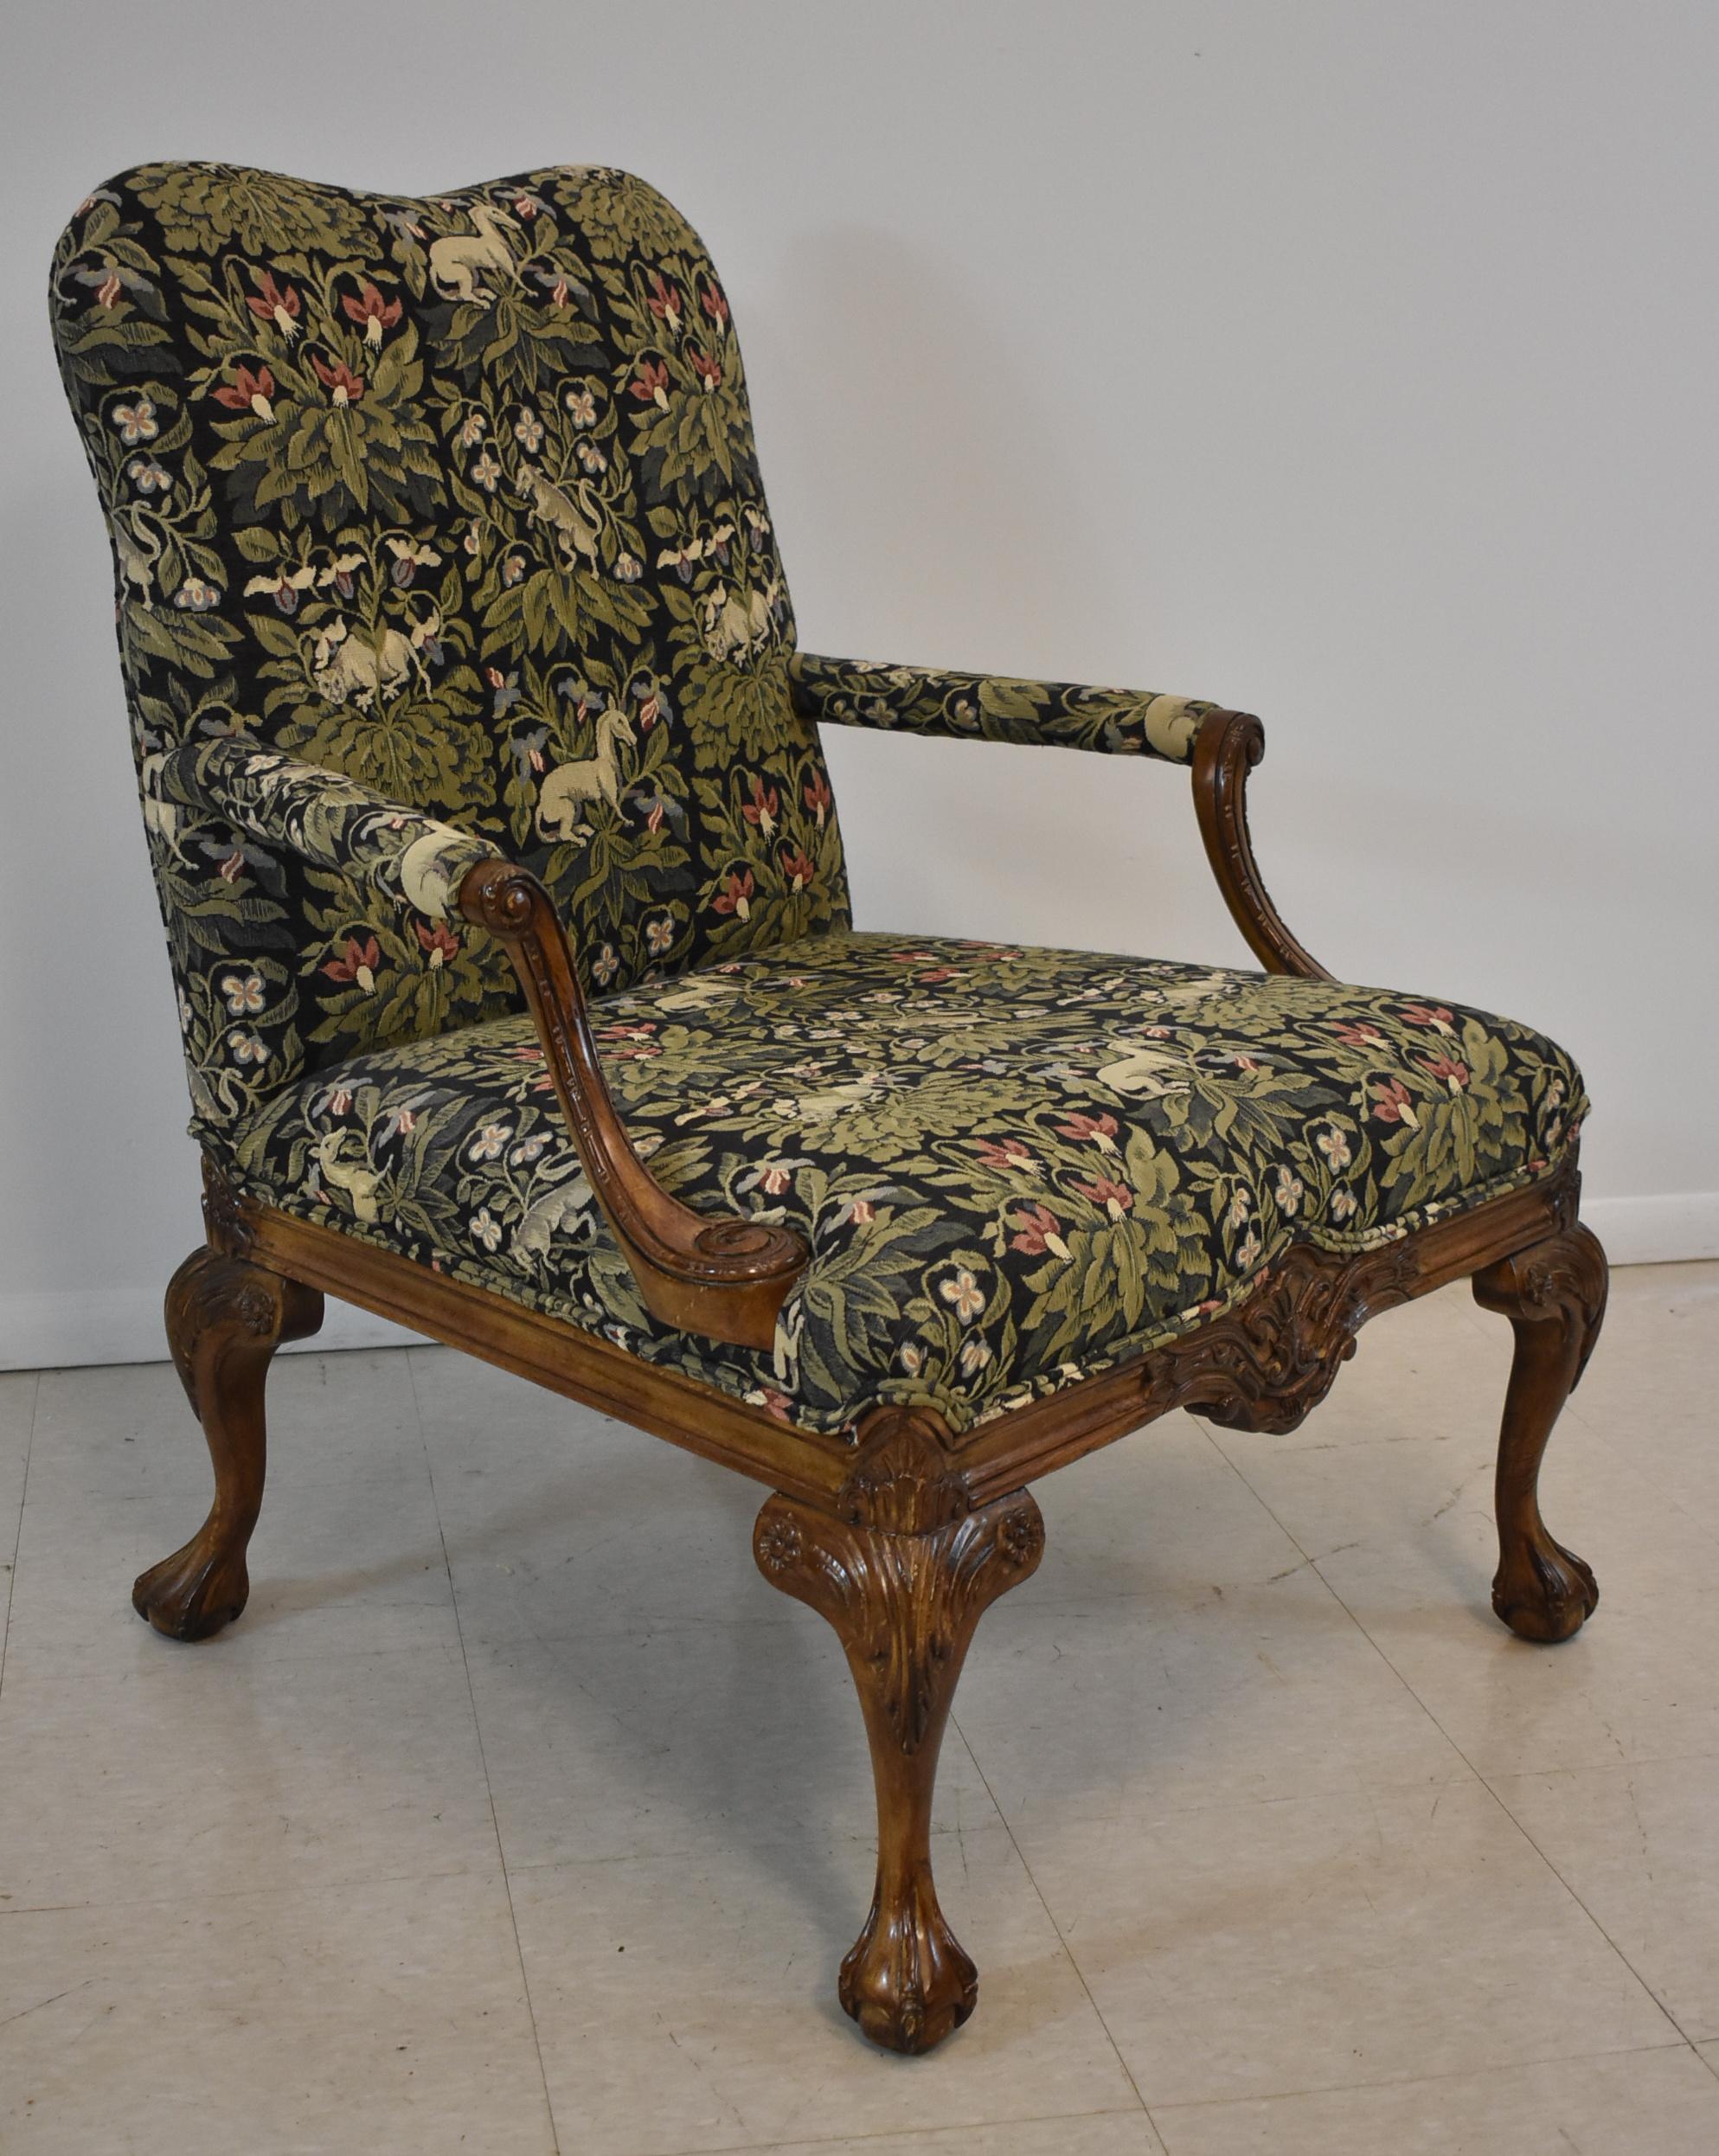 Sedia laterale intagliata in stile italiano di Sherrill Furniture Company. Gambe Chippendale con piedi a sfera e artiglio. Tessuto in arazzo di colore nero e verde con animali in mezzo al fogliame.